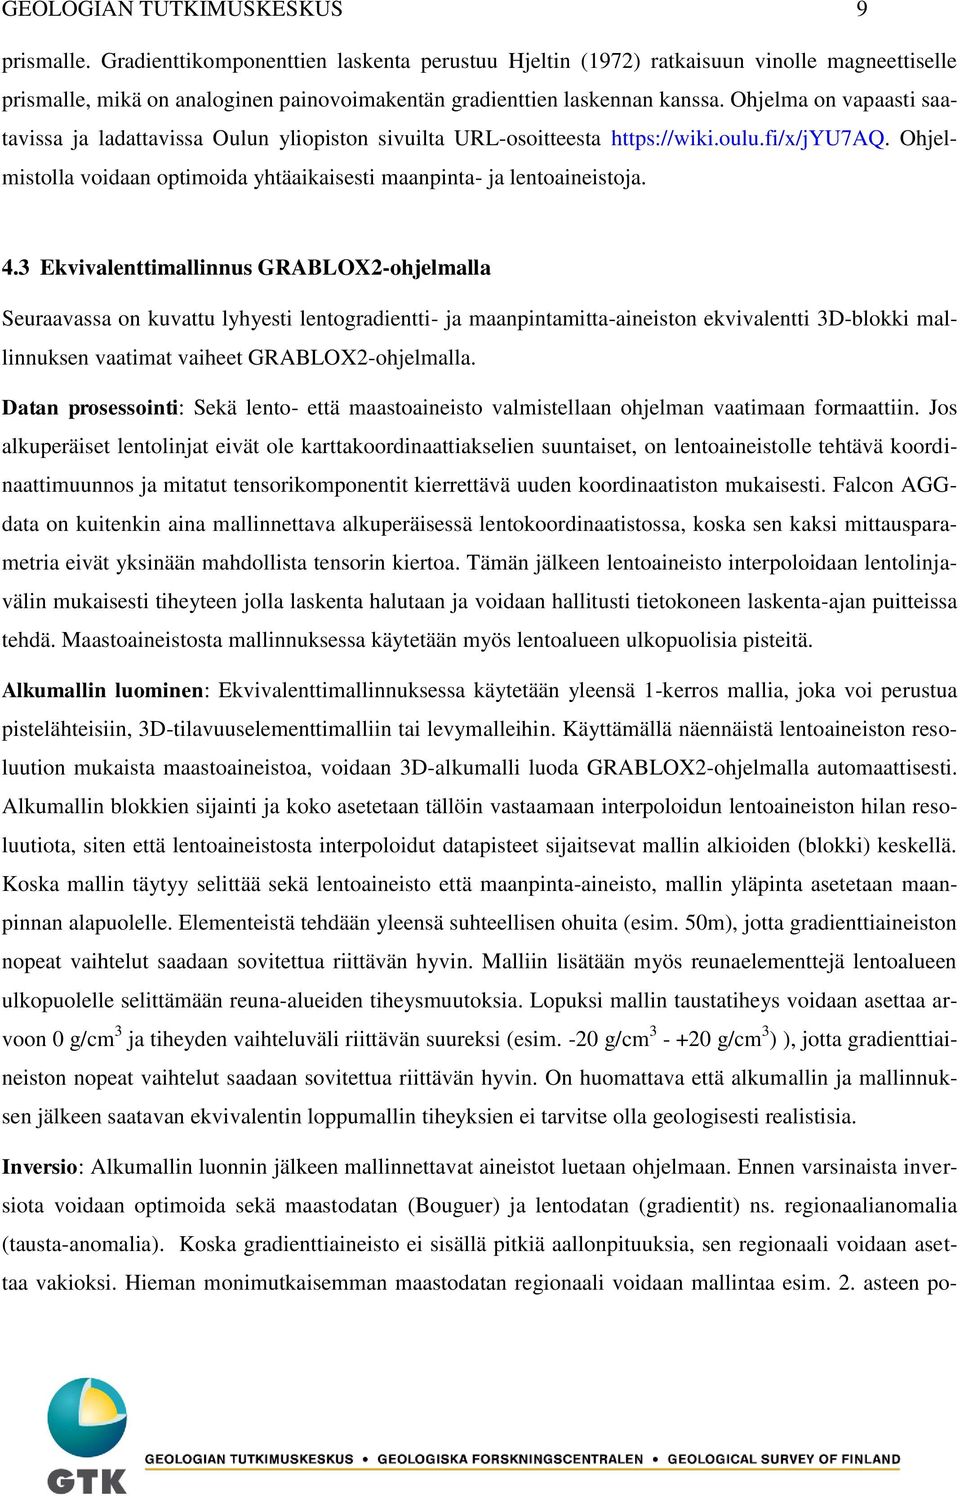 Ohjelma on vapaasti saatavissa ja ladattavissa Oulun yliopiston sivuilta URL-osoitteesta https://wiki.oulu.fi/x/jyu7aq. Ohjelmistolla voidaan optimoida yhtäaikaisesti maanpinta- ja lentoaineistoja. 4.